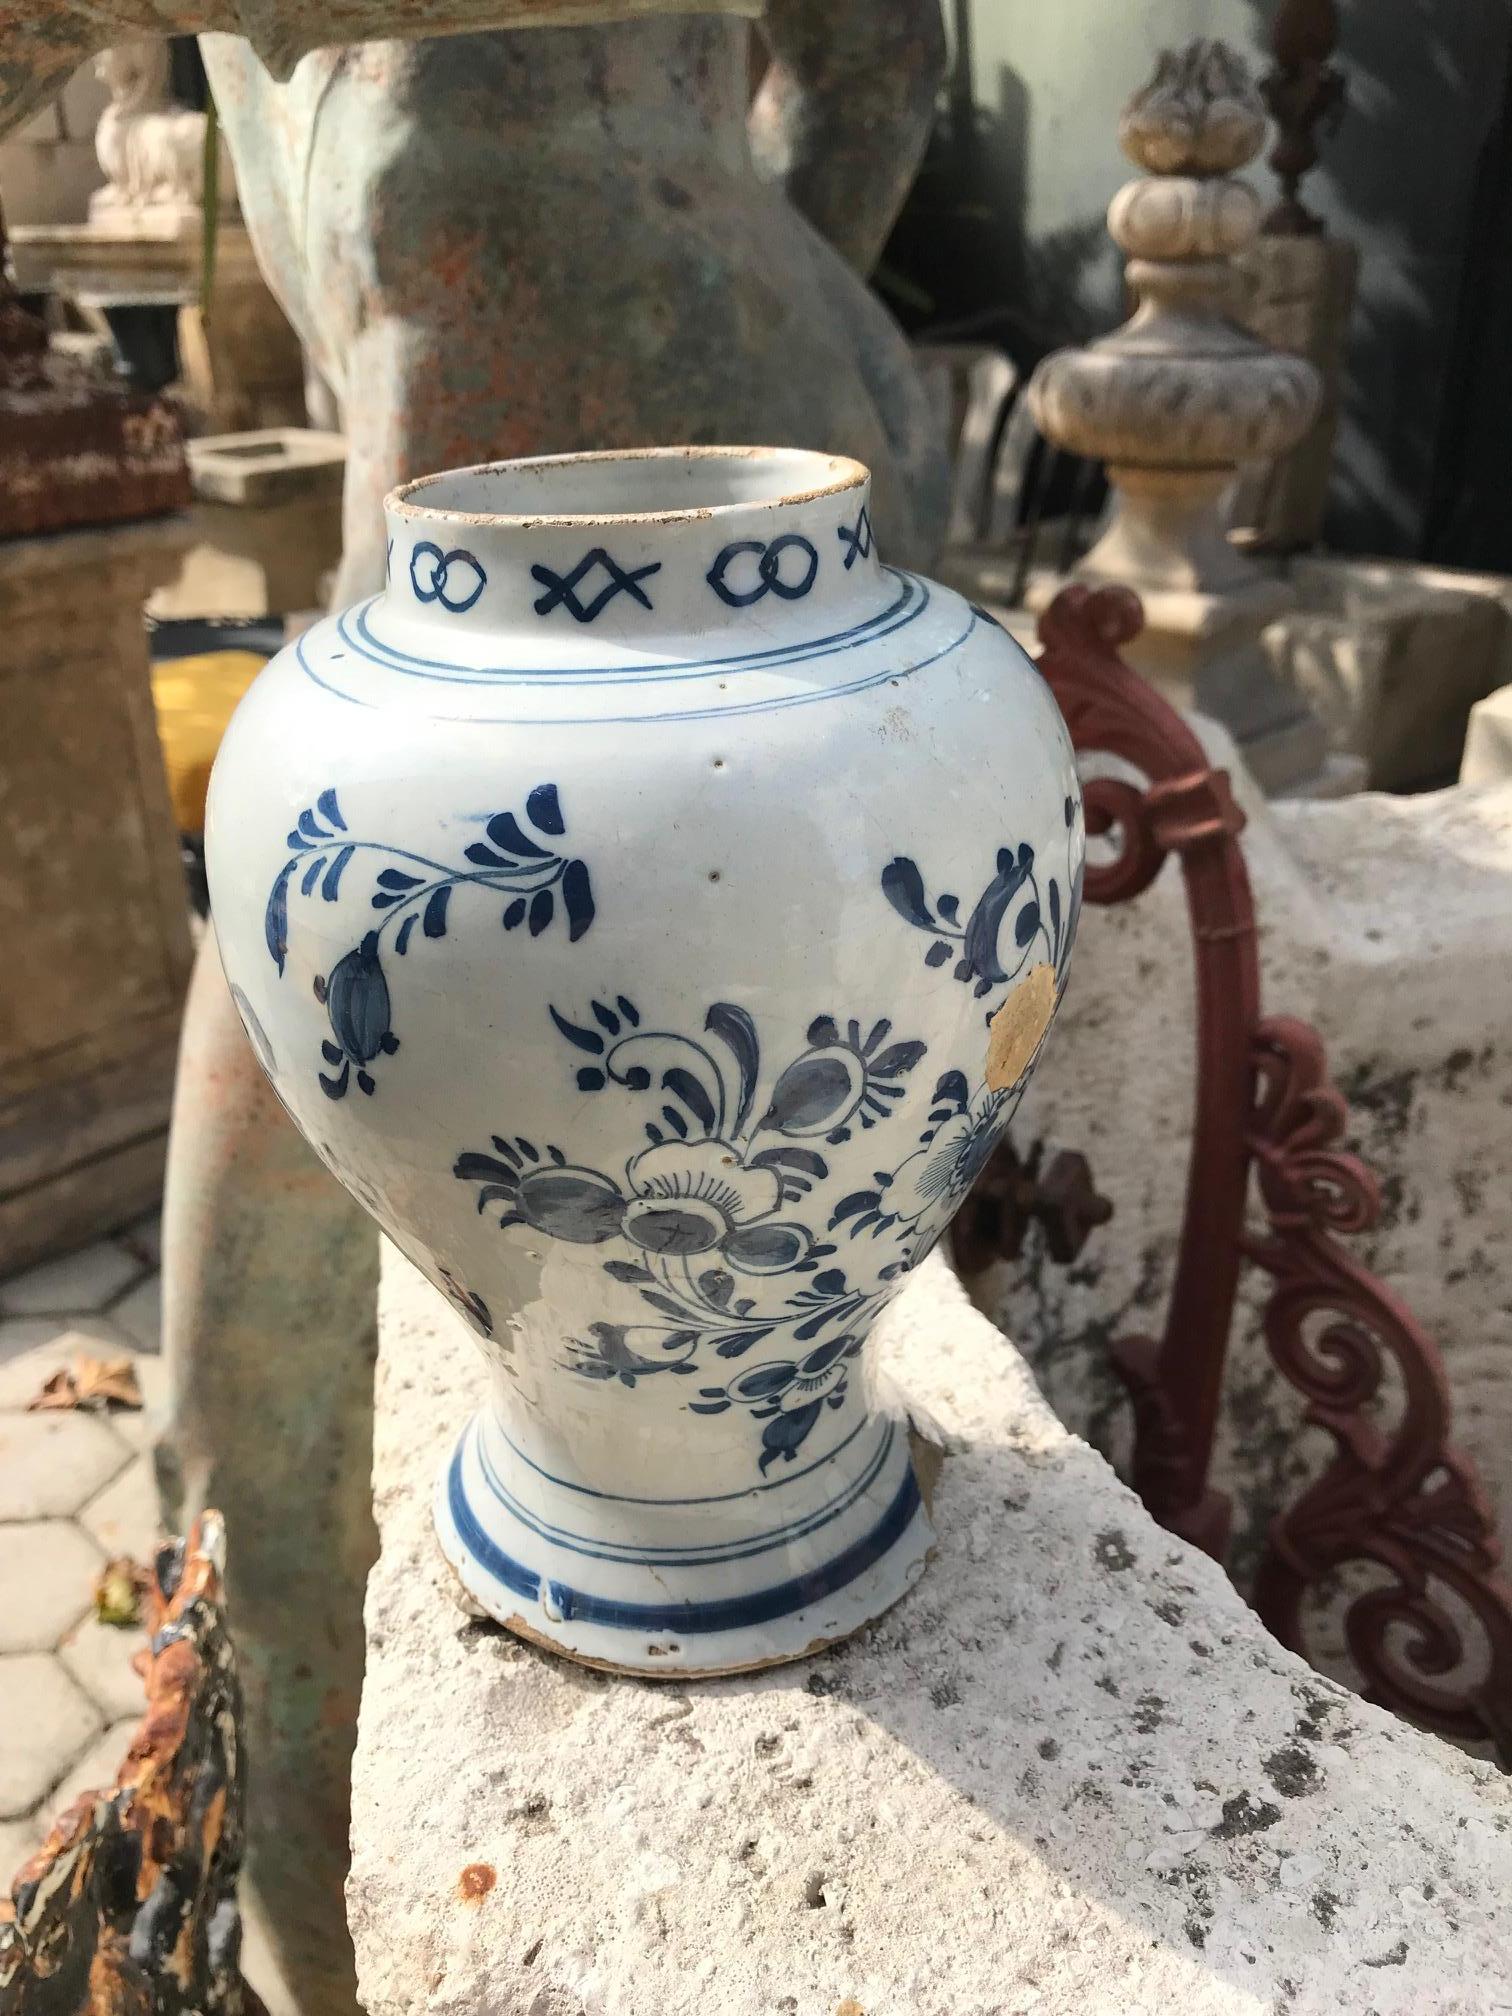 Ein sehr feines 18. Jahrhundert holländischen Delfter Blau und Weiß Keramik Vase oder Krug. Typische vasiforme Form mit mittel- und tiefblauer Chinoiserie-Landschaftsdekoration, verzierter Bordüre am oberen Rand und verspiegelten Kreisen am Boden.